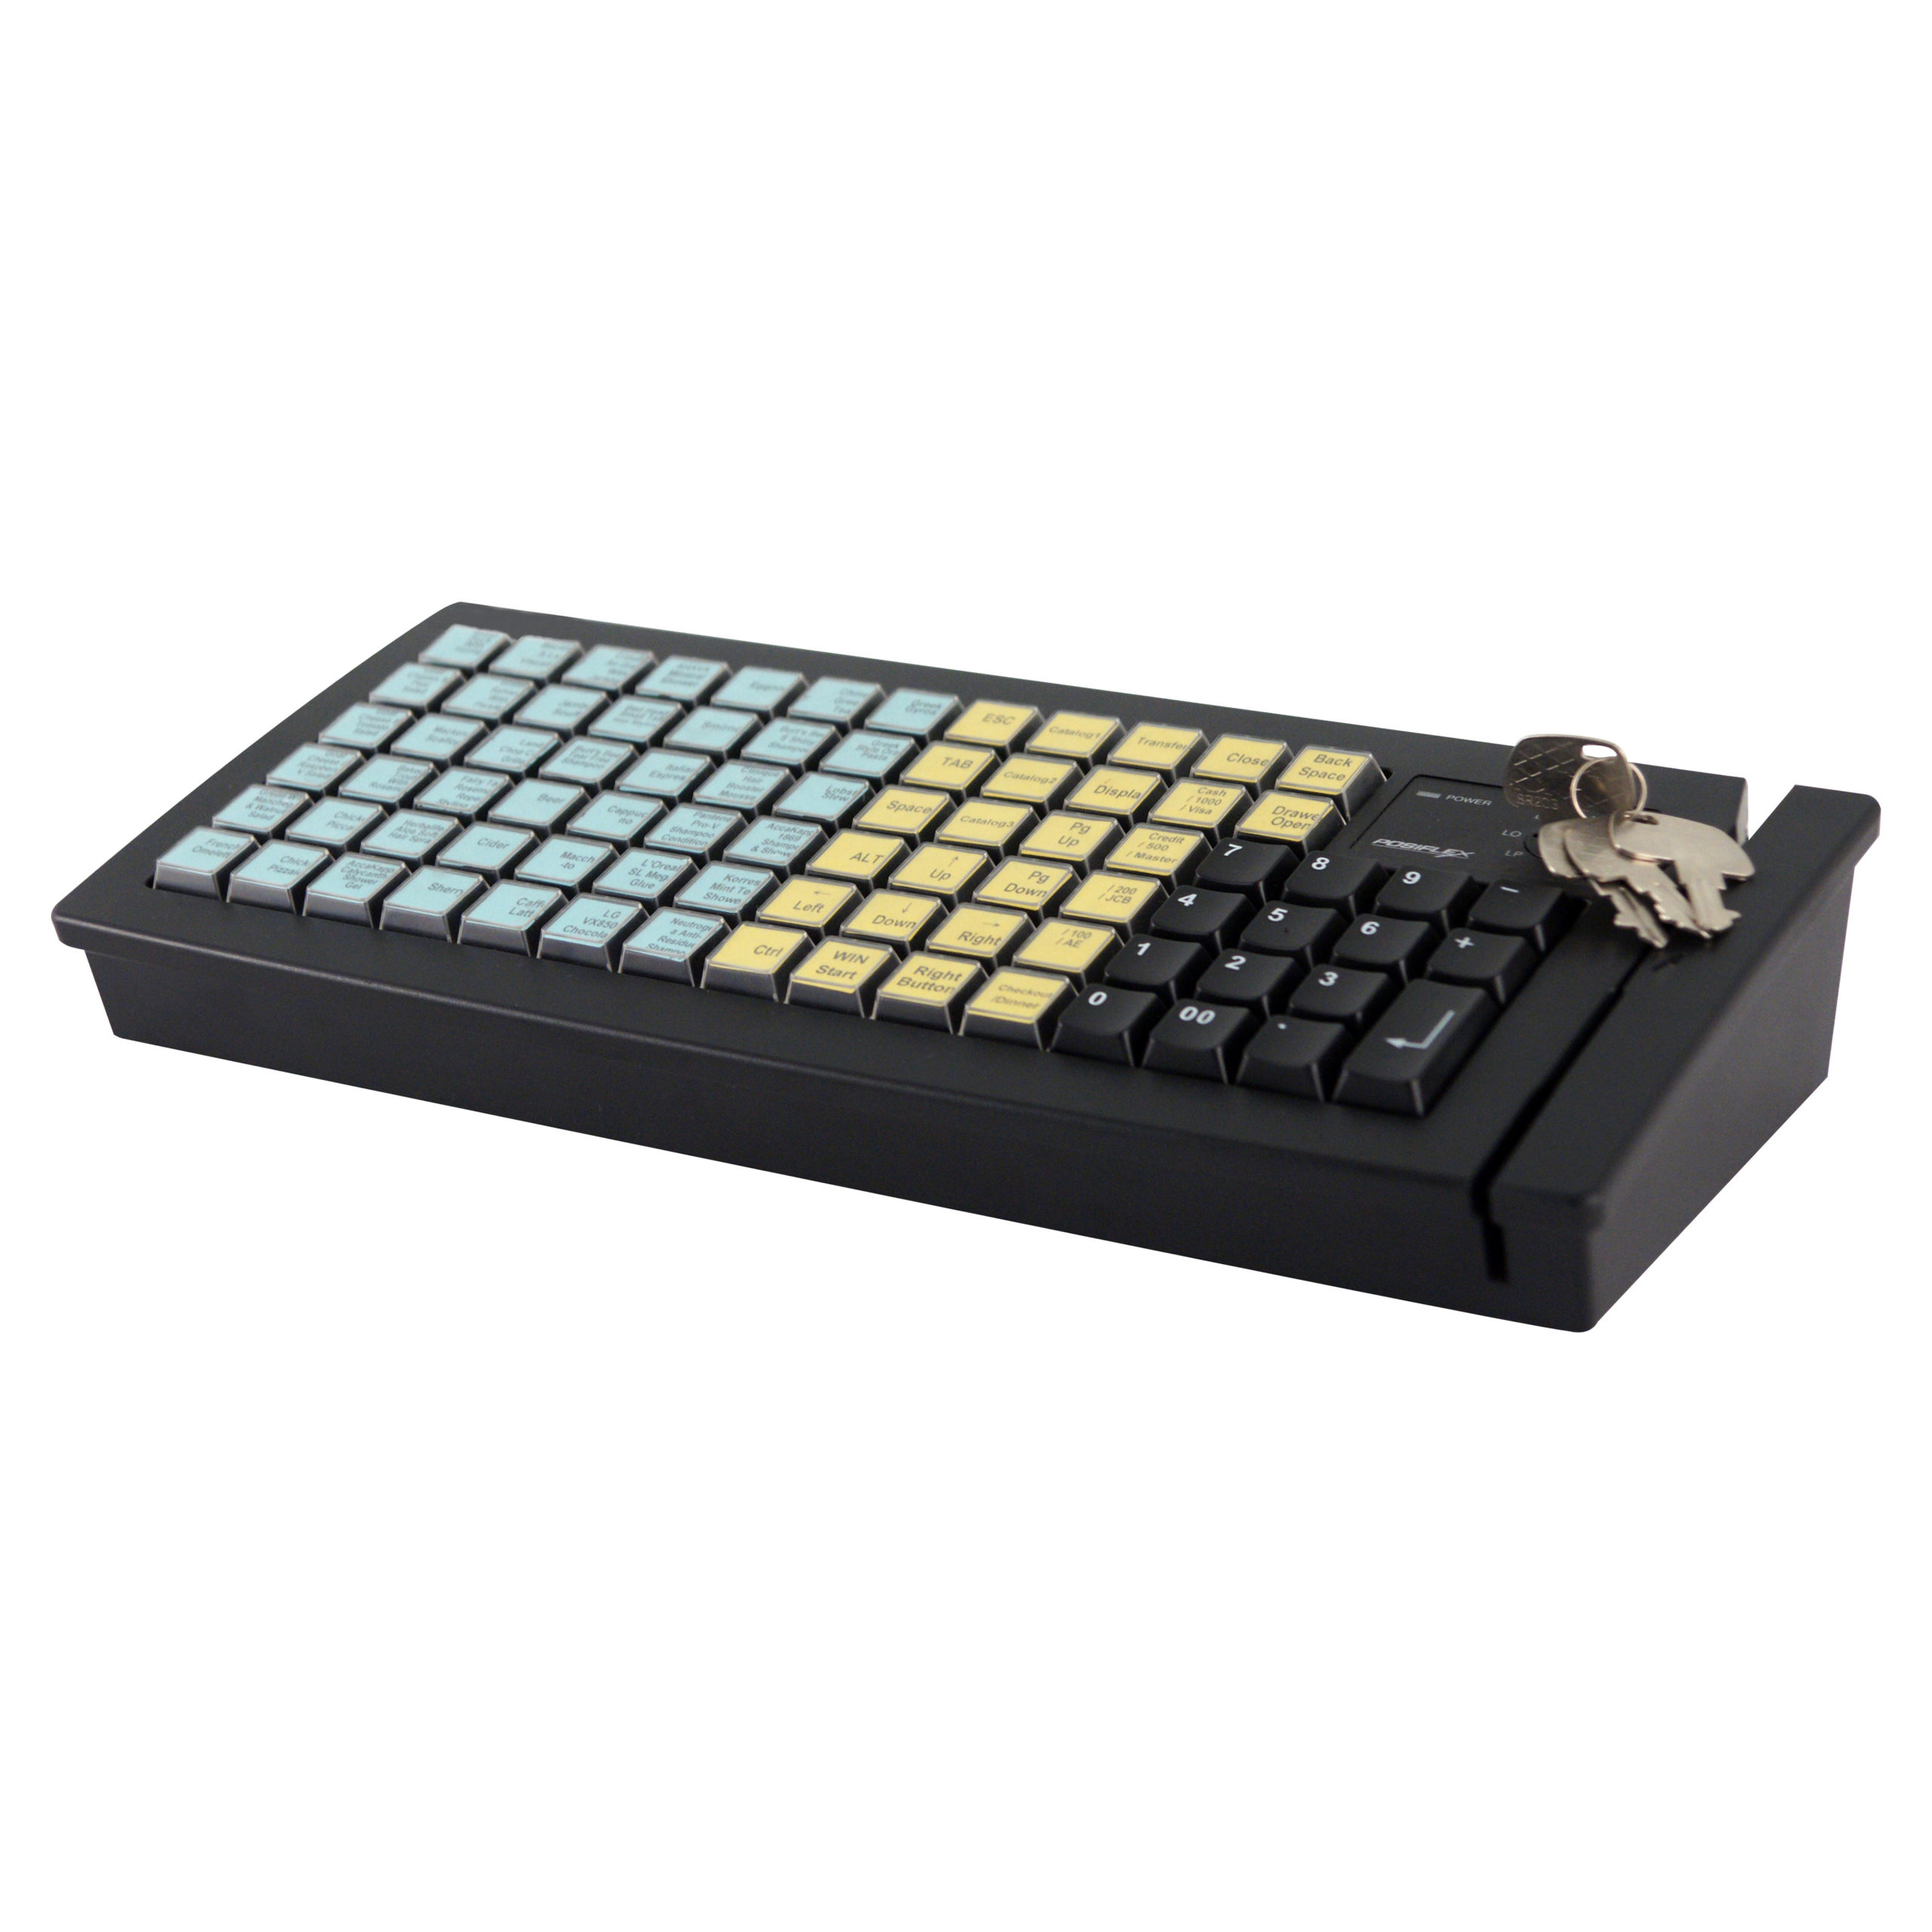 Posiflex Programable Keyboard